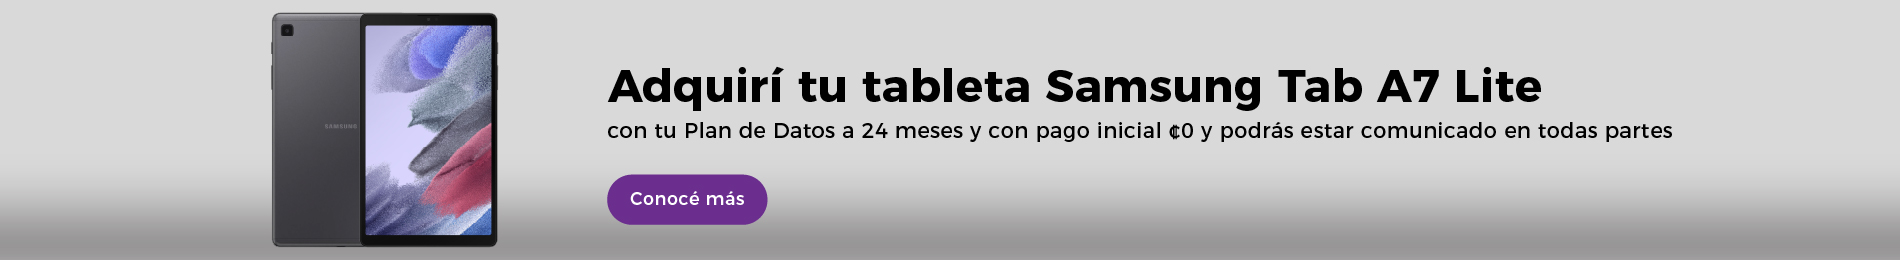 Adquirí tu tableta Samsung Tab A7 Lite con tu Plan de Datos a 24 meses y con pago inicial ¢0